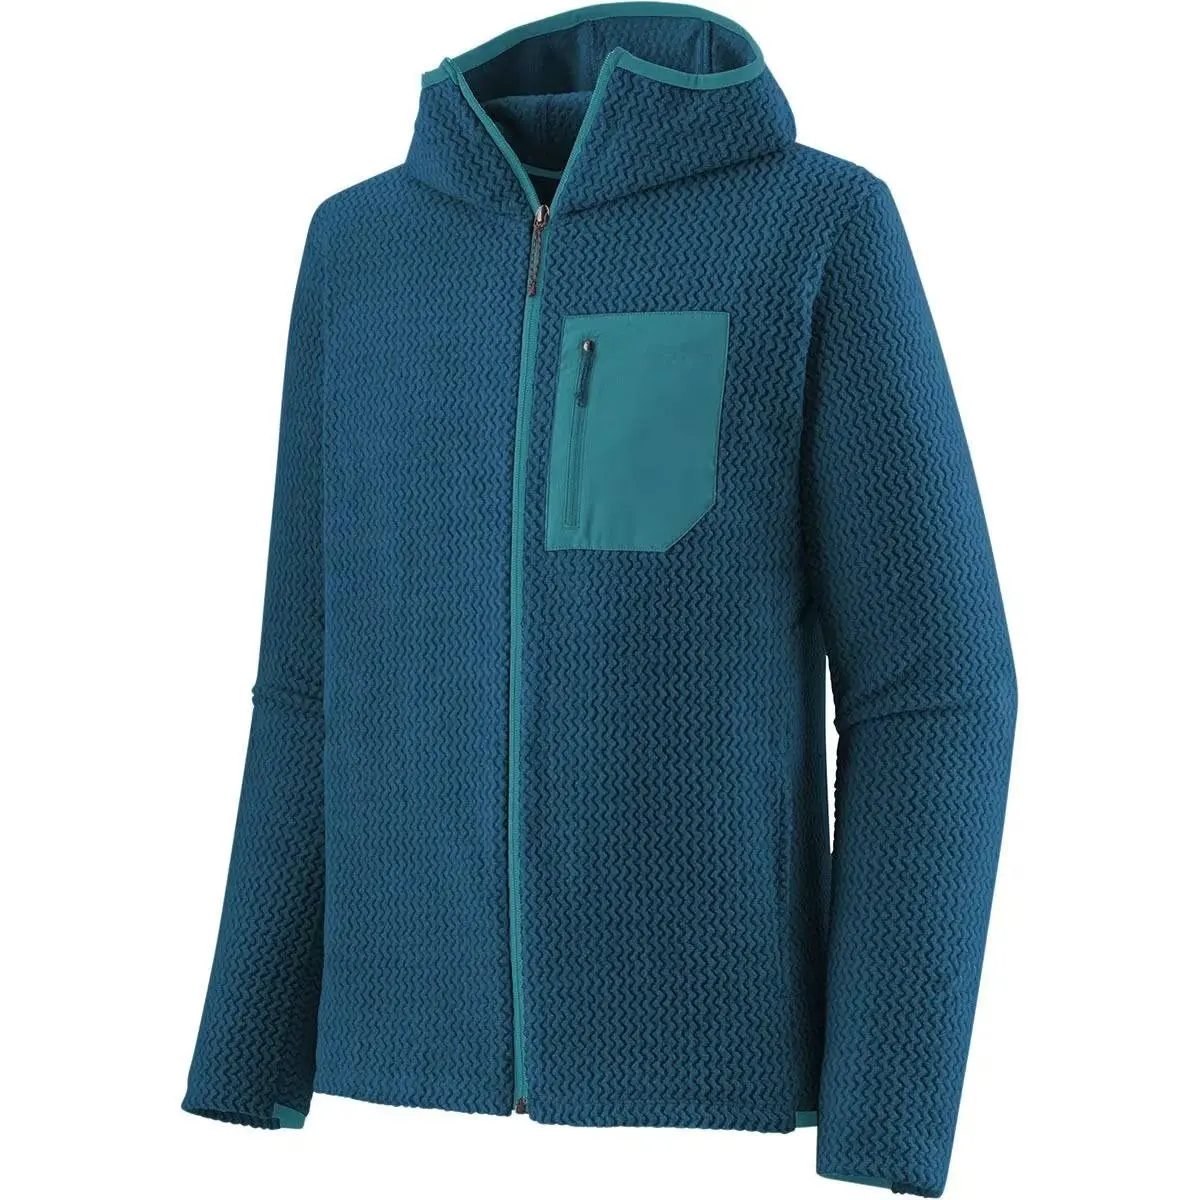 Jaqueta de lã jacquard com capuz para exterior com novo design